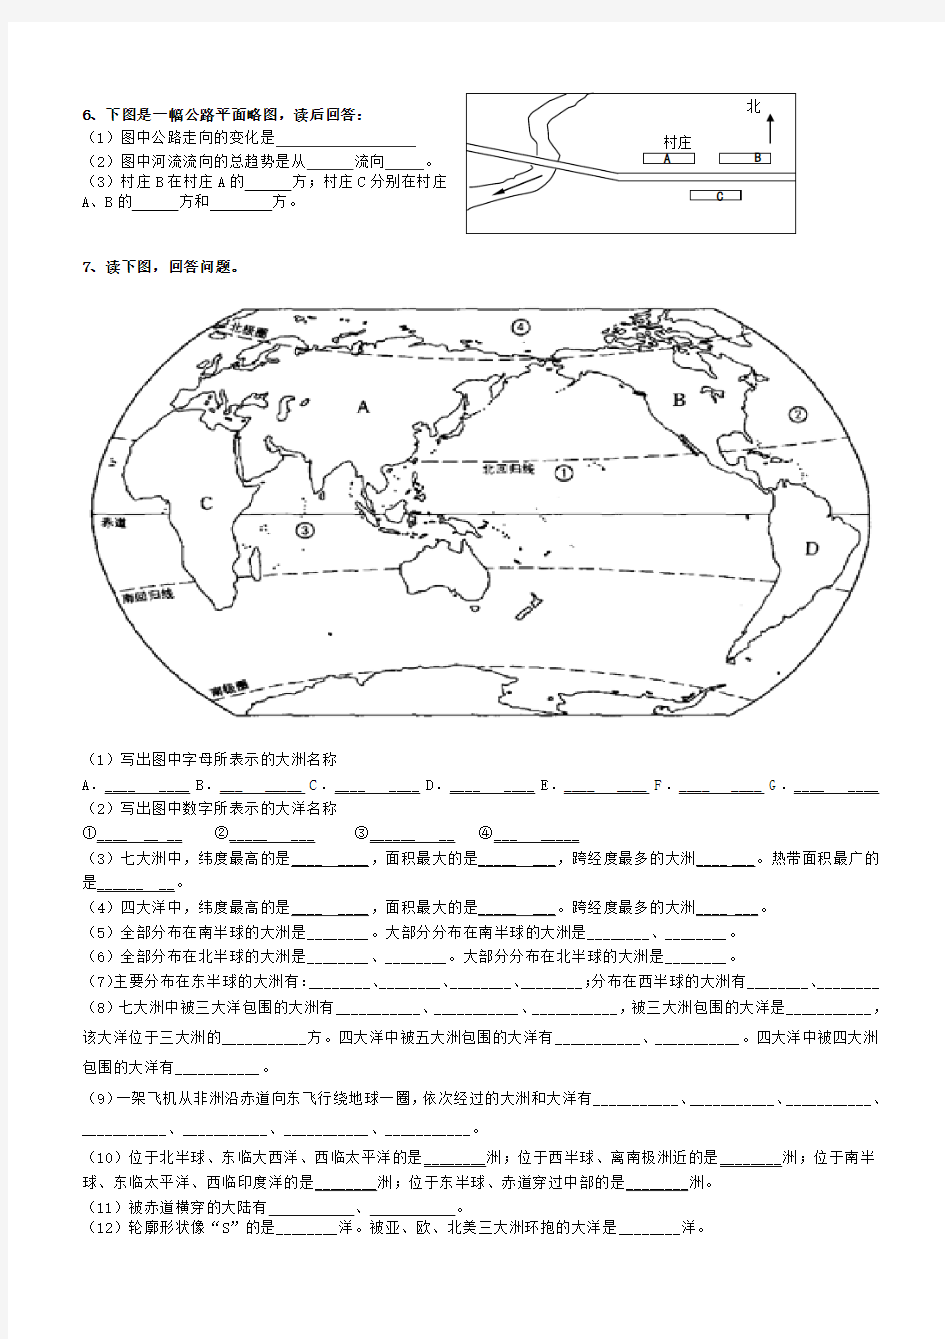 人教版 七年级上册地理读图题集